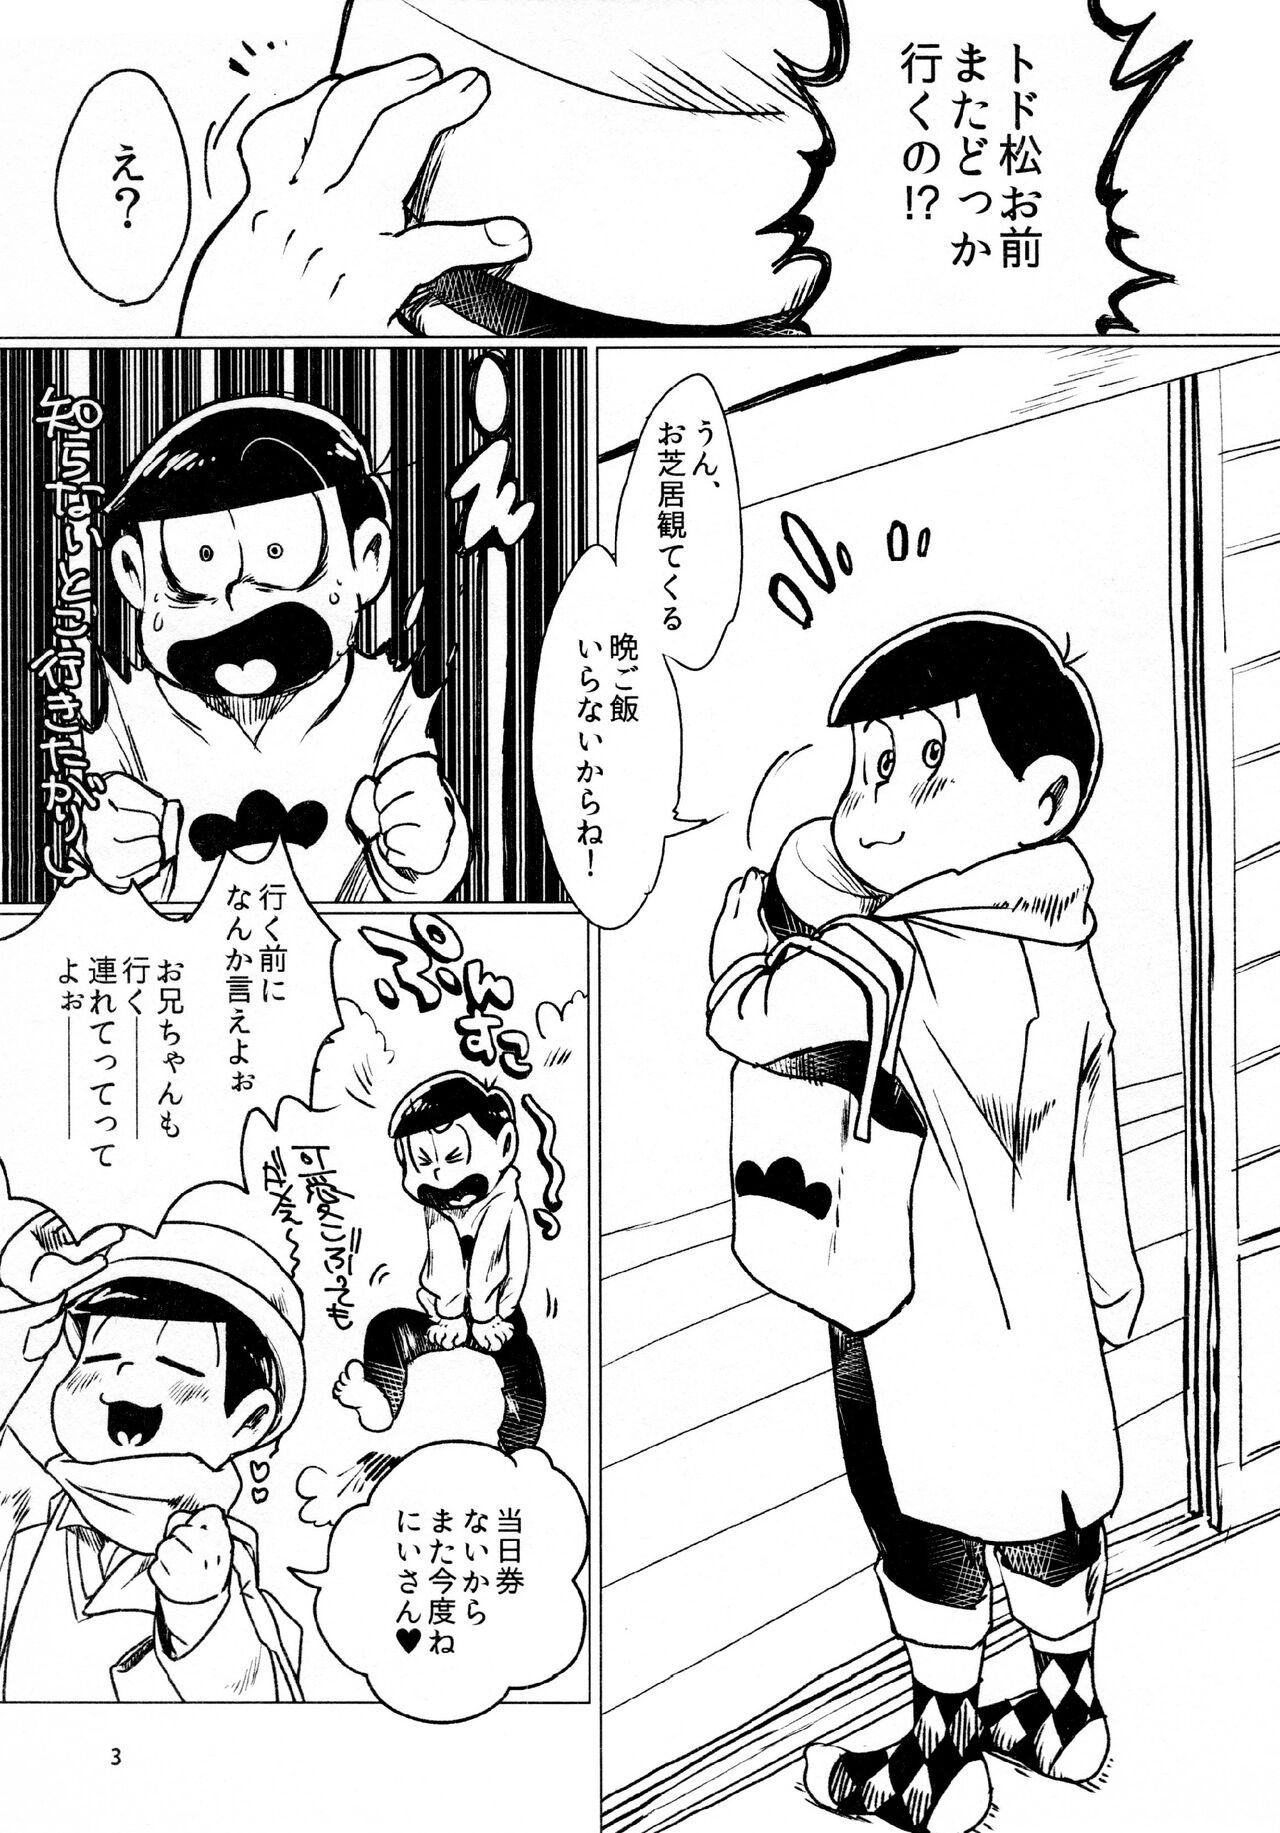 Piercing todomatsu bishi yonurekeikaku - Osomatsu-san Cojiendo - Page 3